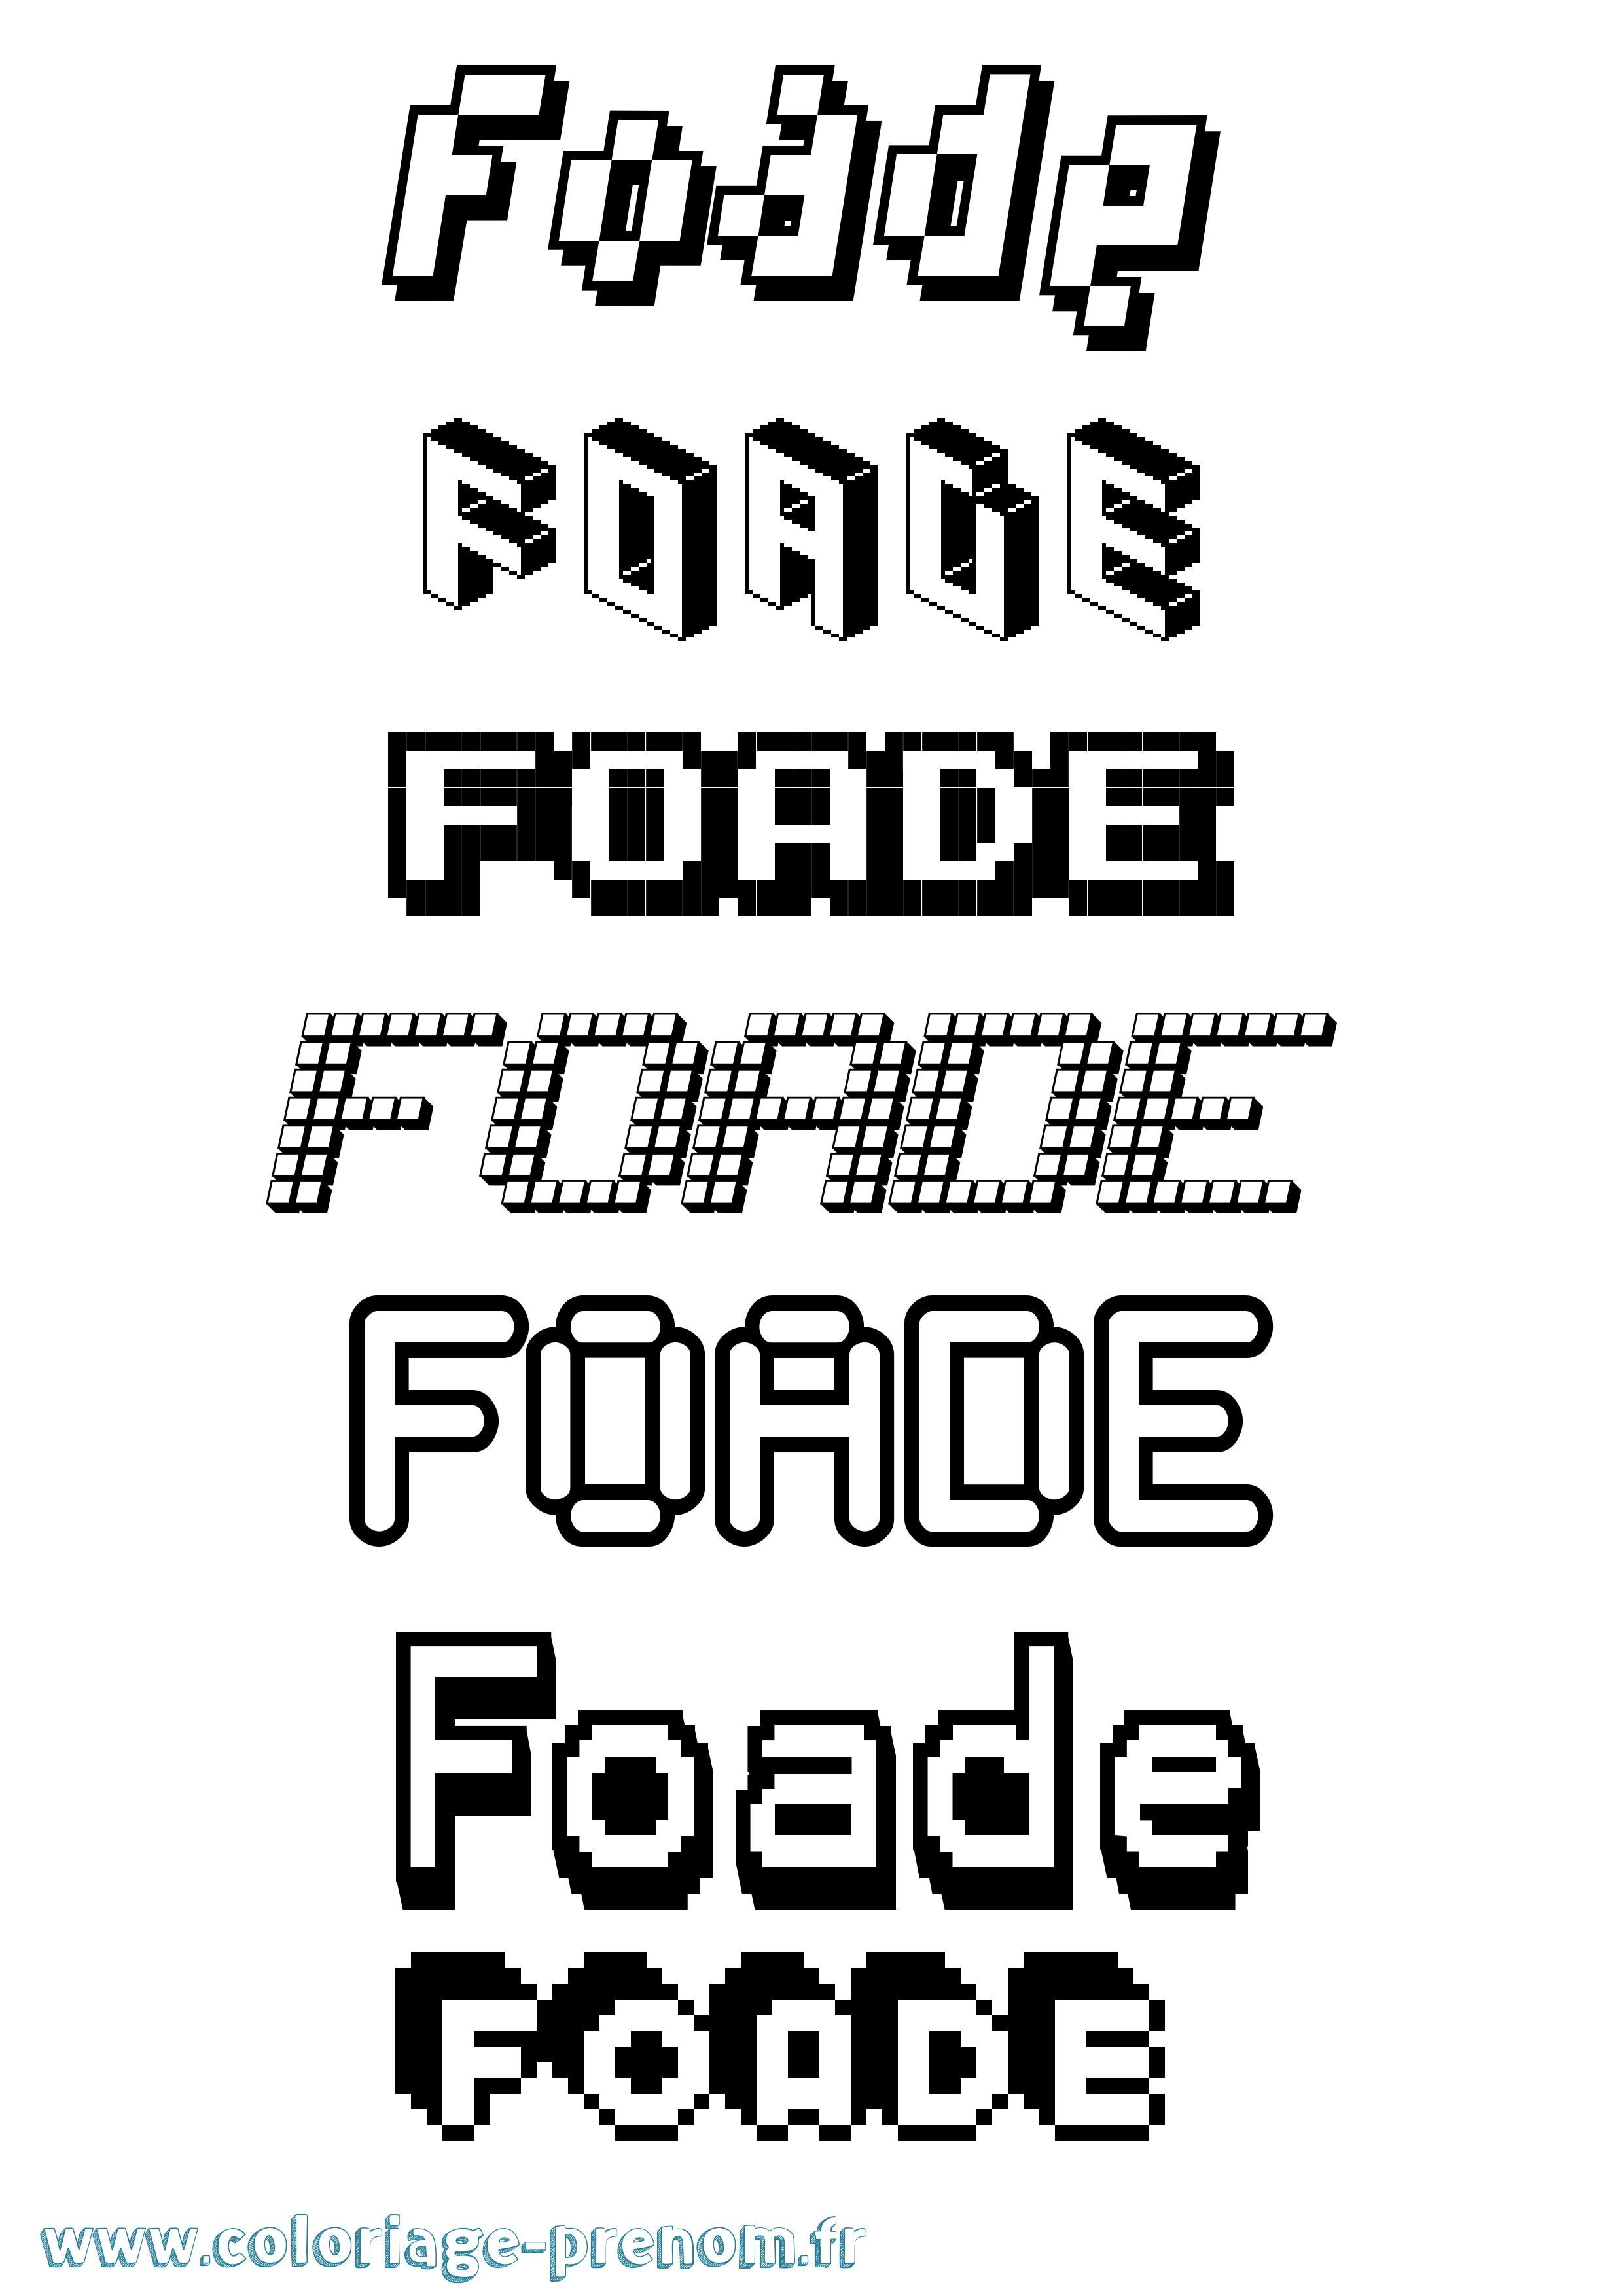 Coloriage prénom Foade Pixel